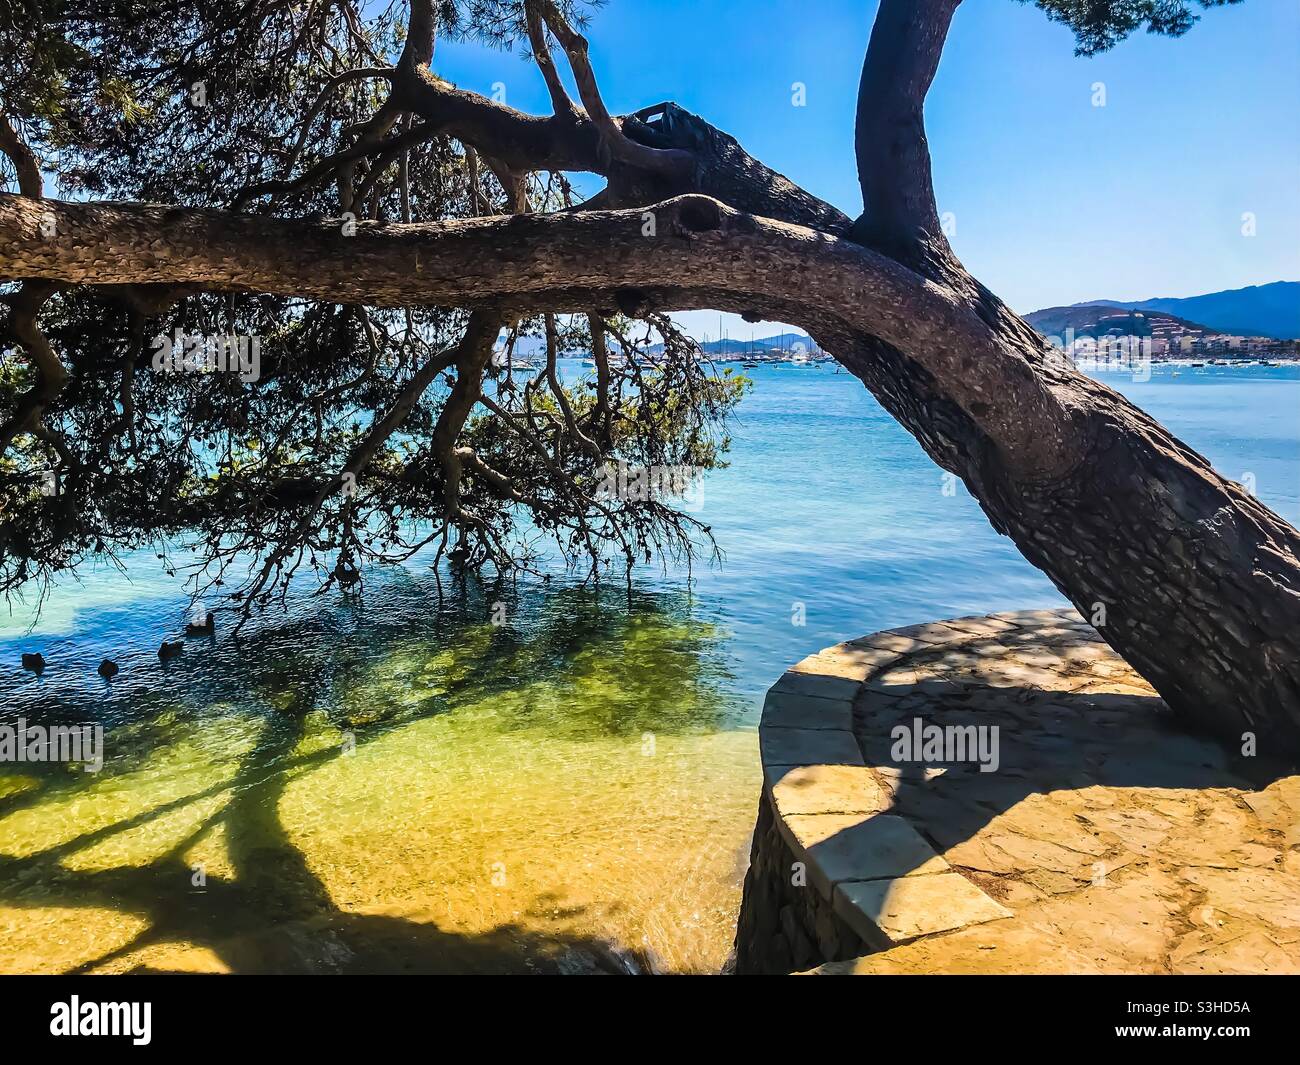 Puerto Pollensa bay, Mallorca Stock Photo